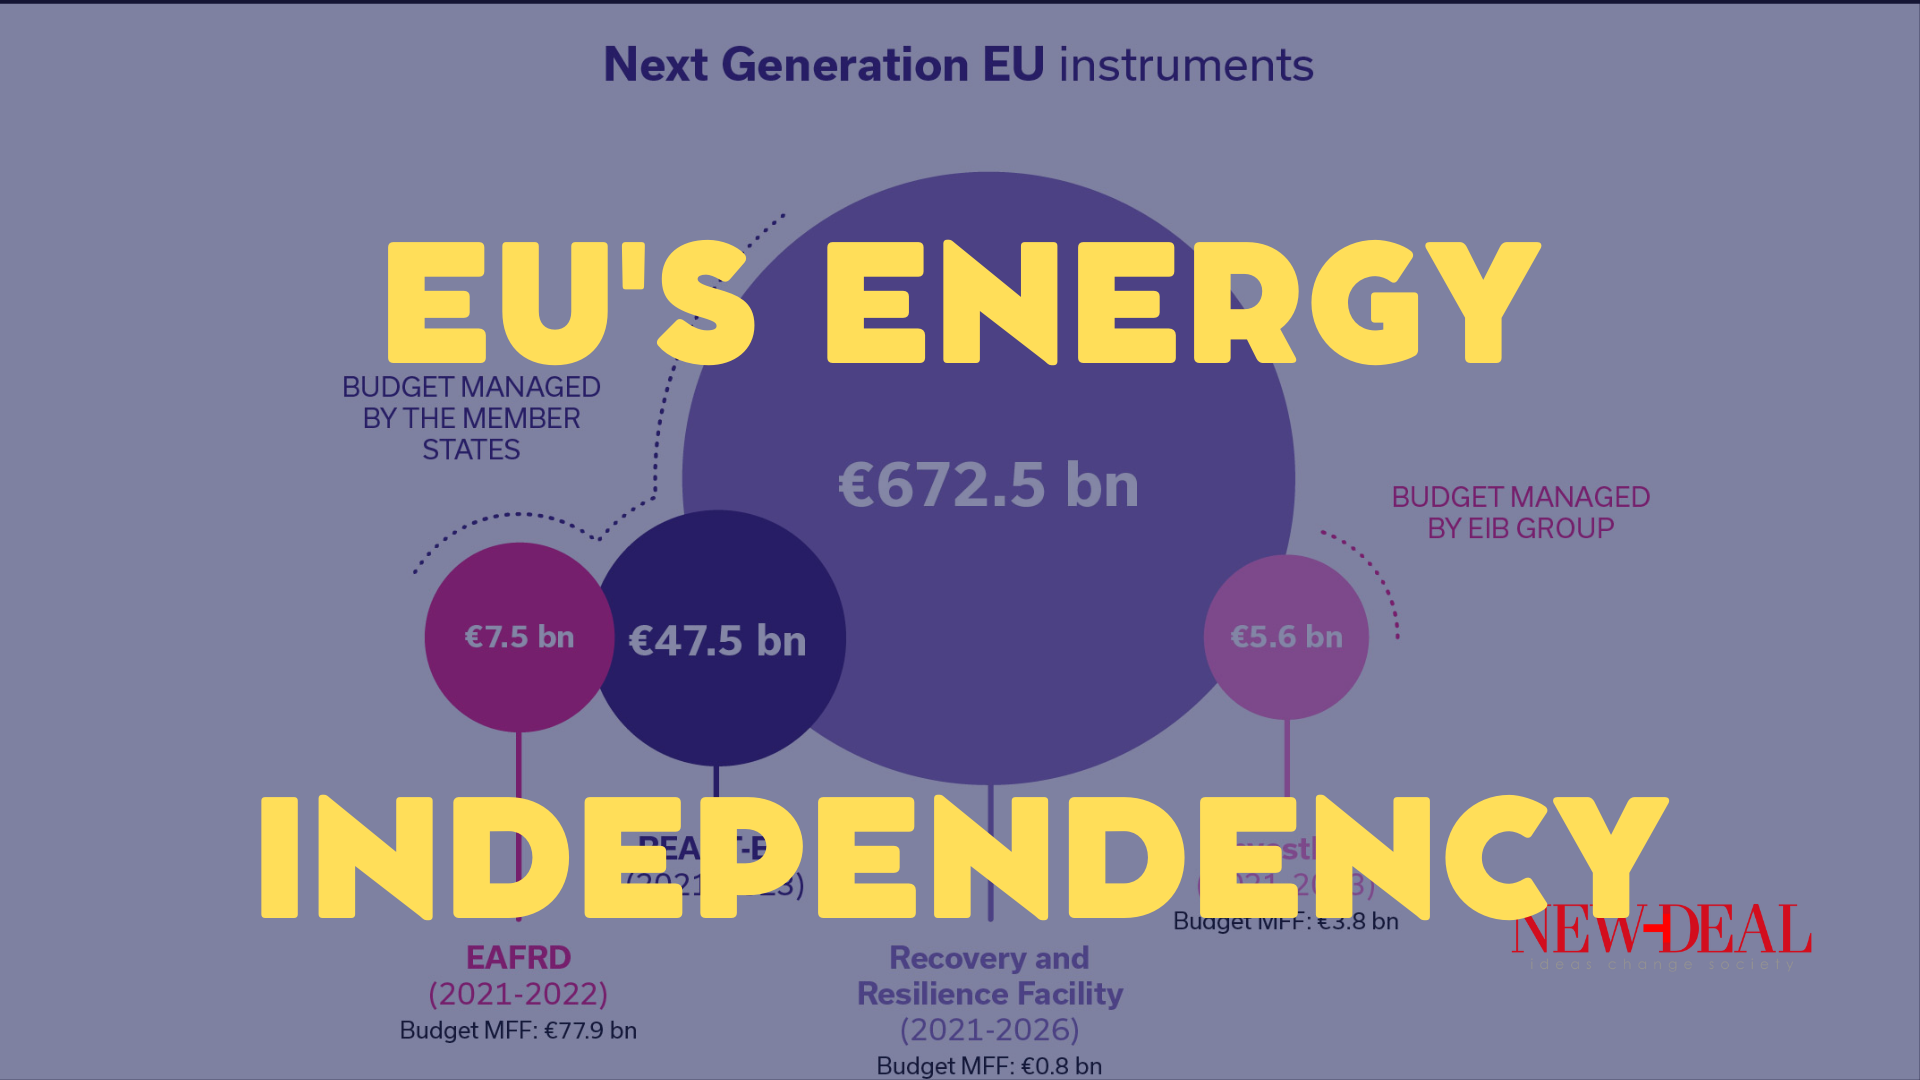 Ο Κωνσταντίνος Μαργαρίτης αναδεικνύει τον τρόπο που η ΕΕ δαπανά χρήματα για την πράσινη μετάβαση με σκοπό την ενεργειακή ανεξαρτησία της Ευρώπης. Το χρηματοδοτικό εργαλείο είναι το NextGenerationEU (NGEU). new Deal